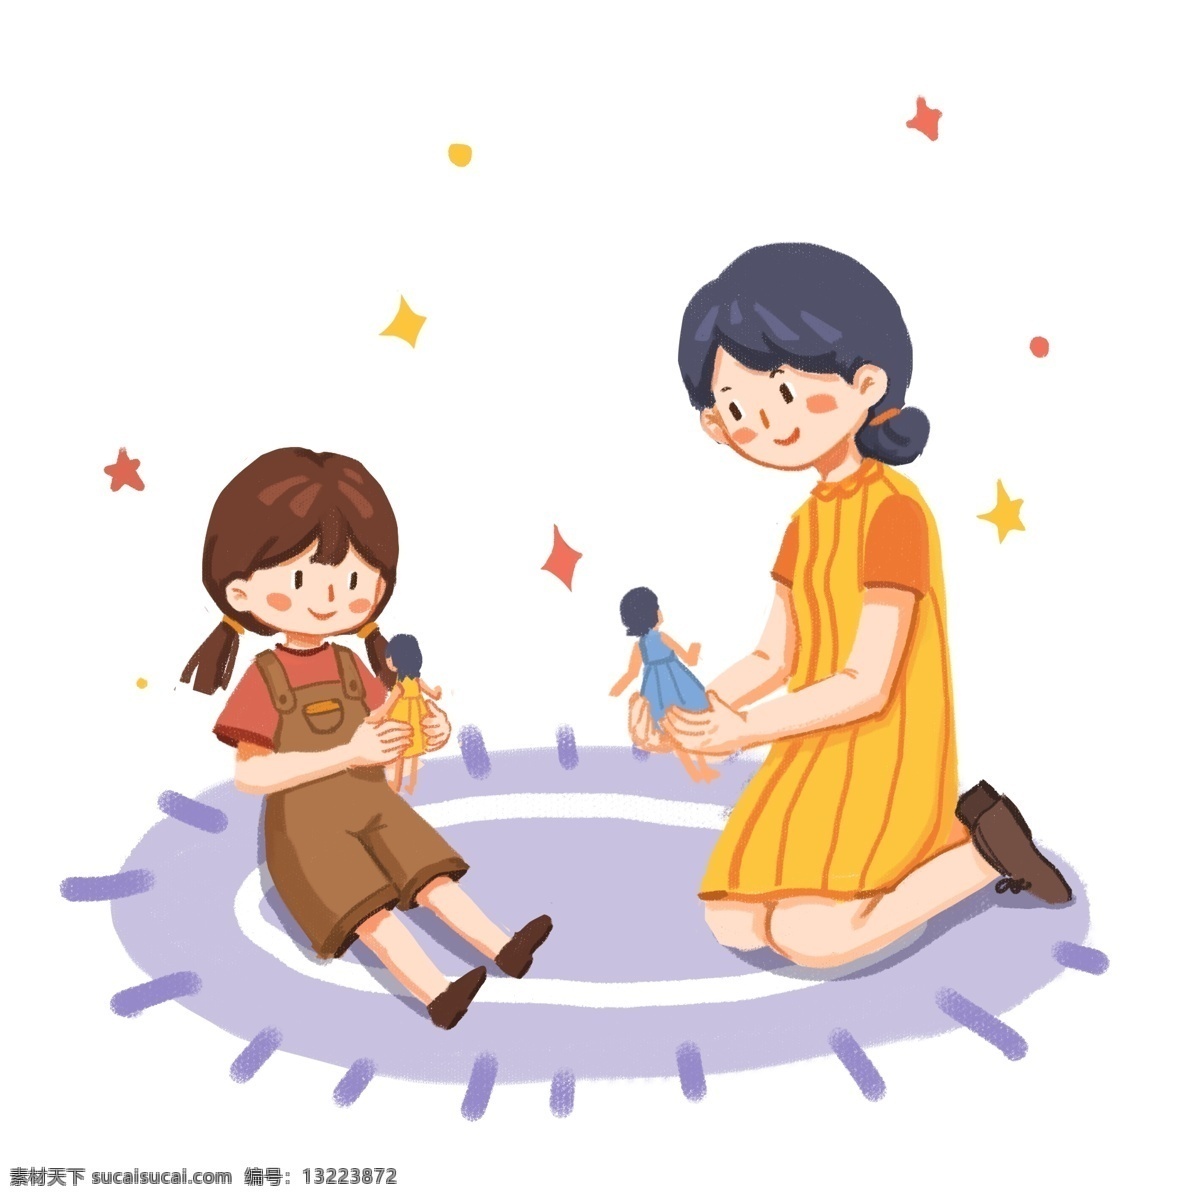 母亲节 套 图 系列 六 黄色 蓝色 粉红 装饰 贴画 免扣 套图 宝宝 妈妈 沙发 礼物 盆景 节日礼物 凳子